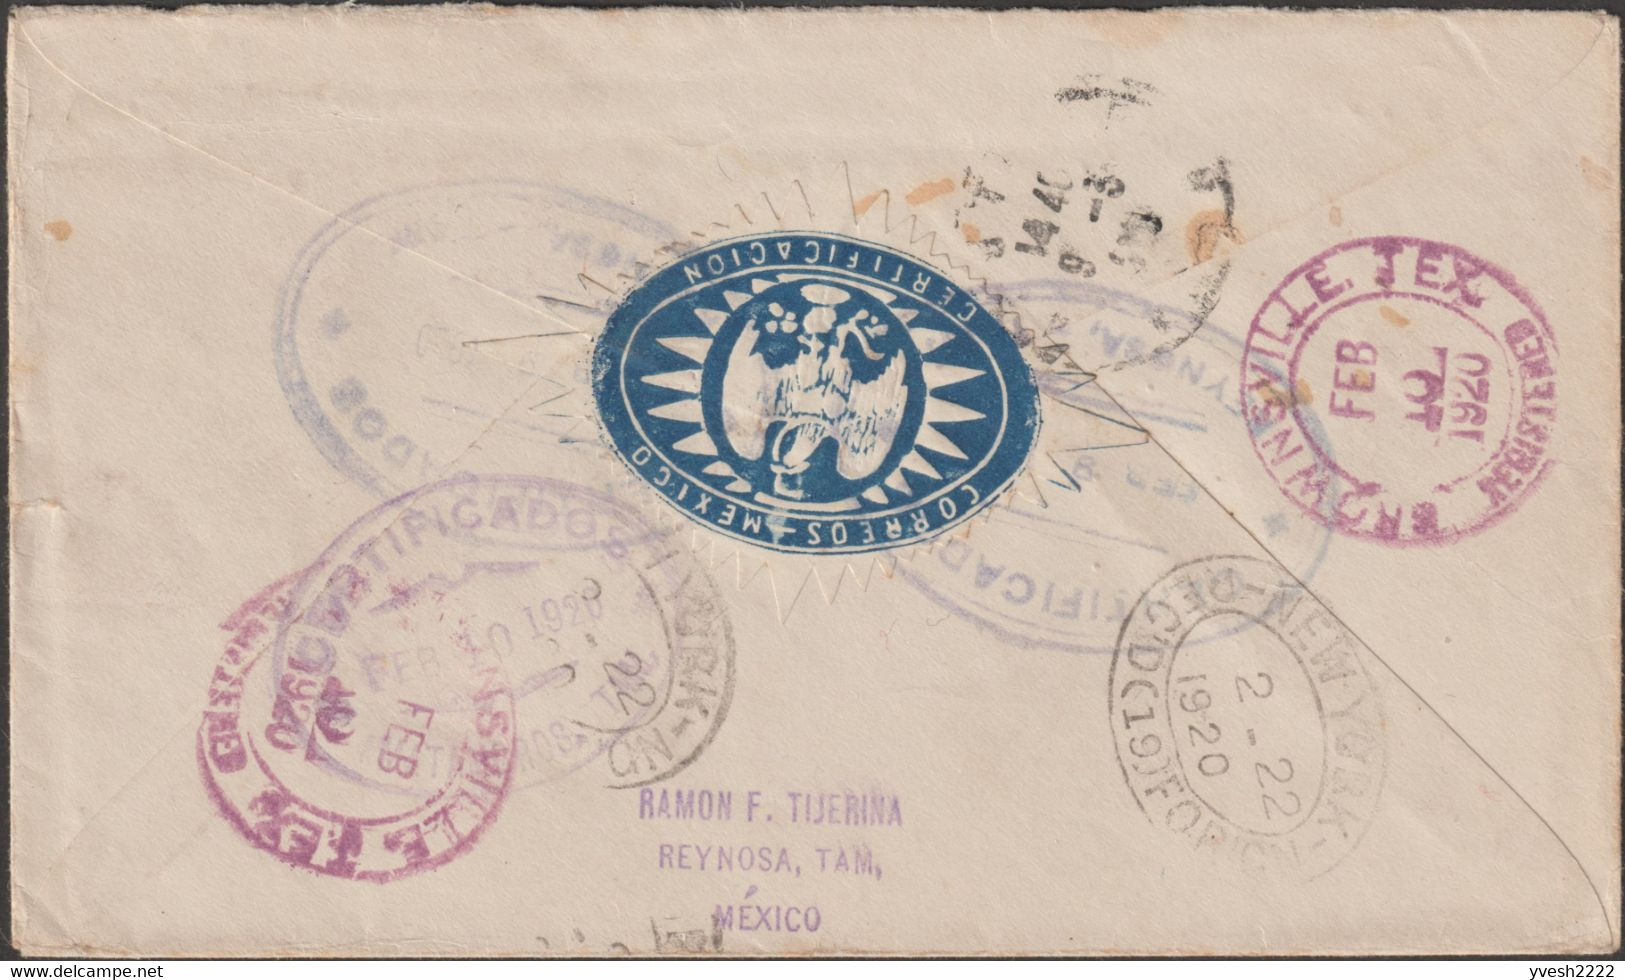 Mexique 1920 Et 1936. Deux Lettres Recommandées Avec Vignettes Postales Bleue Et Rouges. Cactus, Serpent, Aigle - Aérogrammes